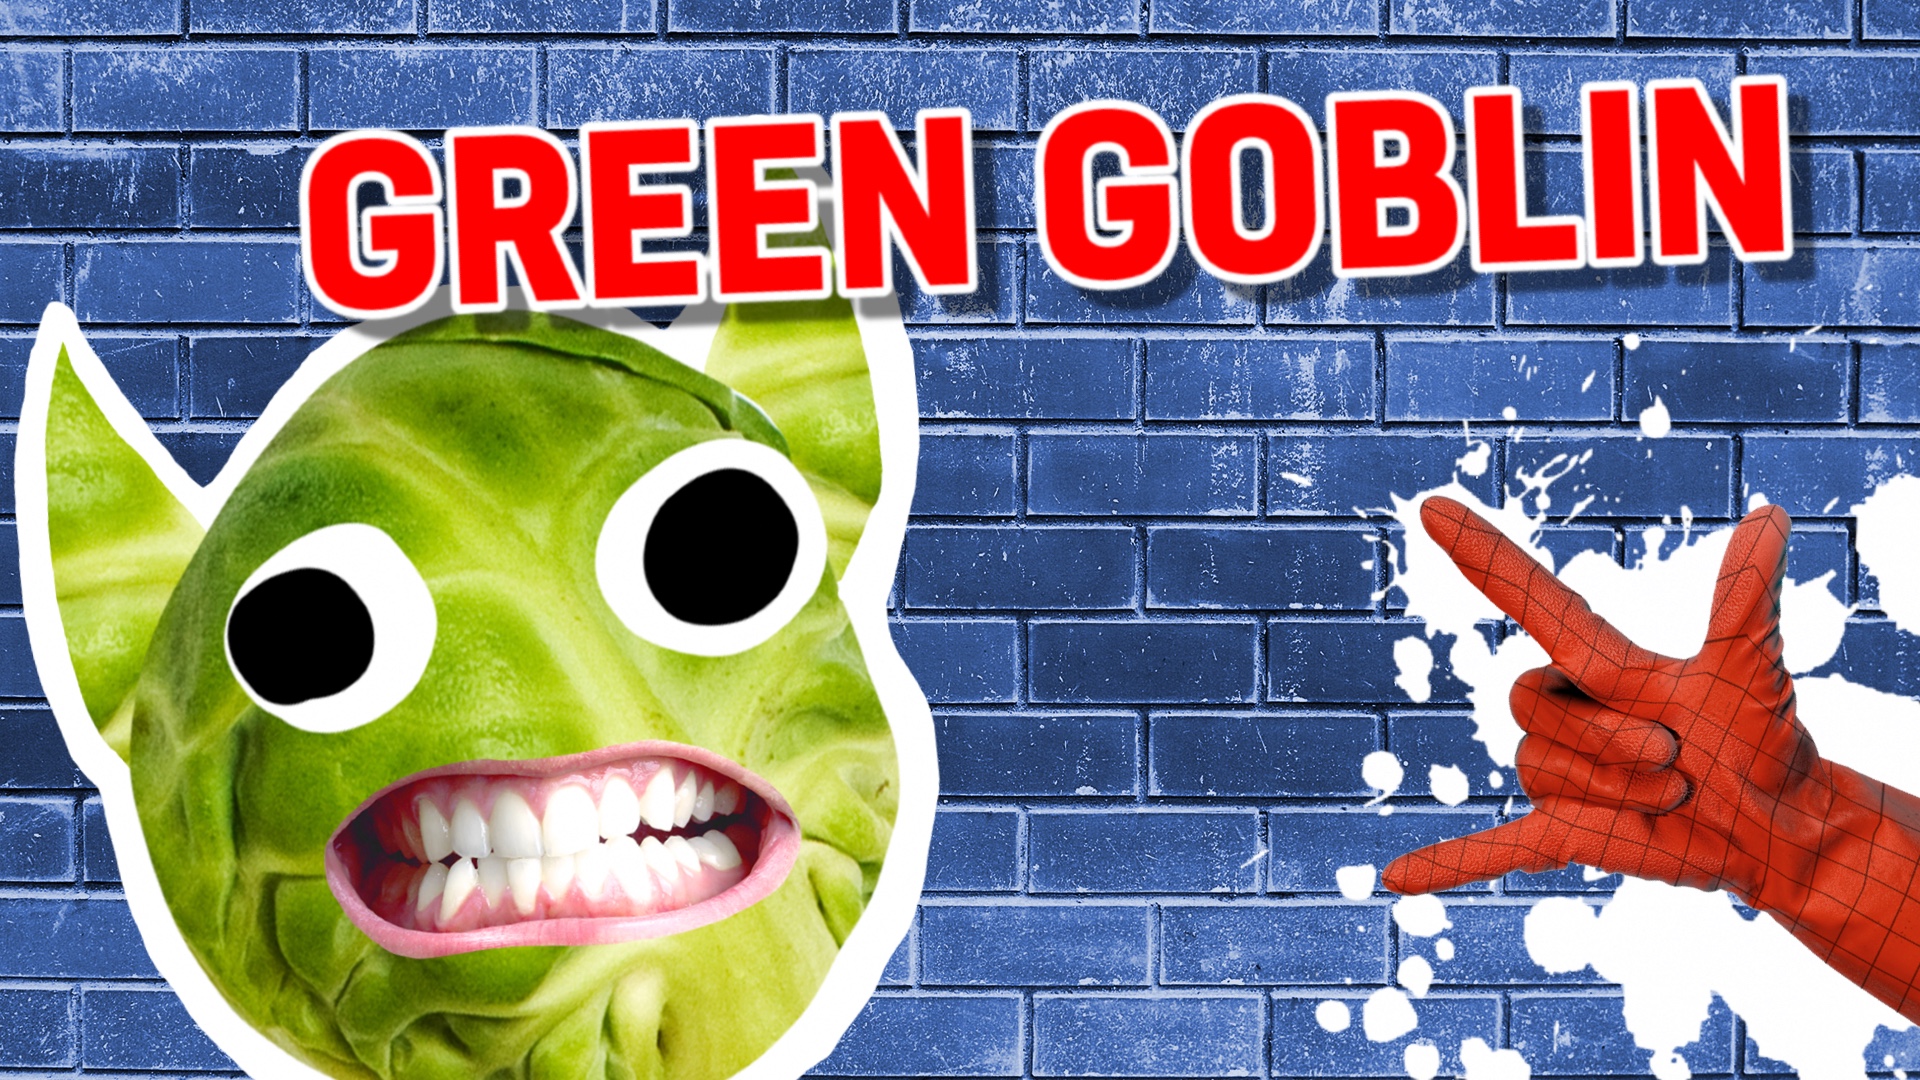 RESULT: GREEN GOBLIN